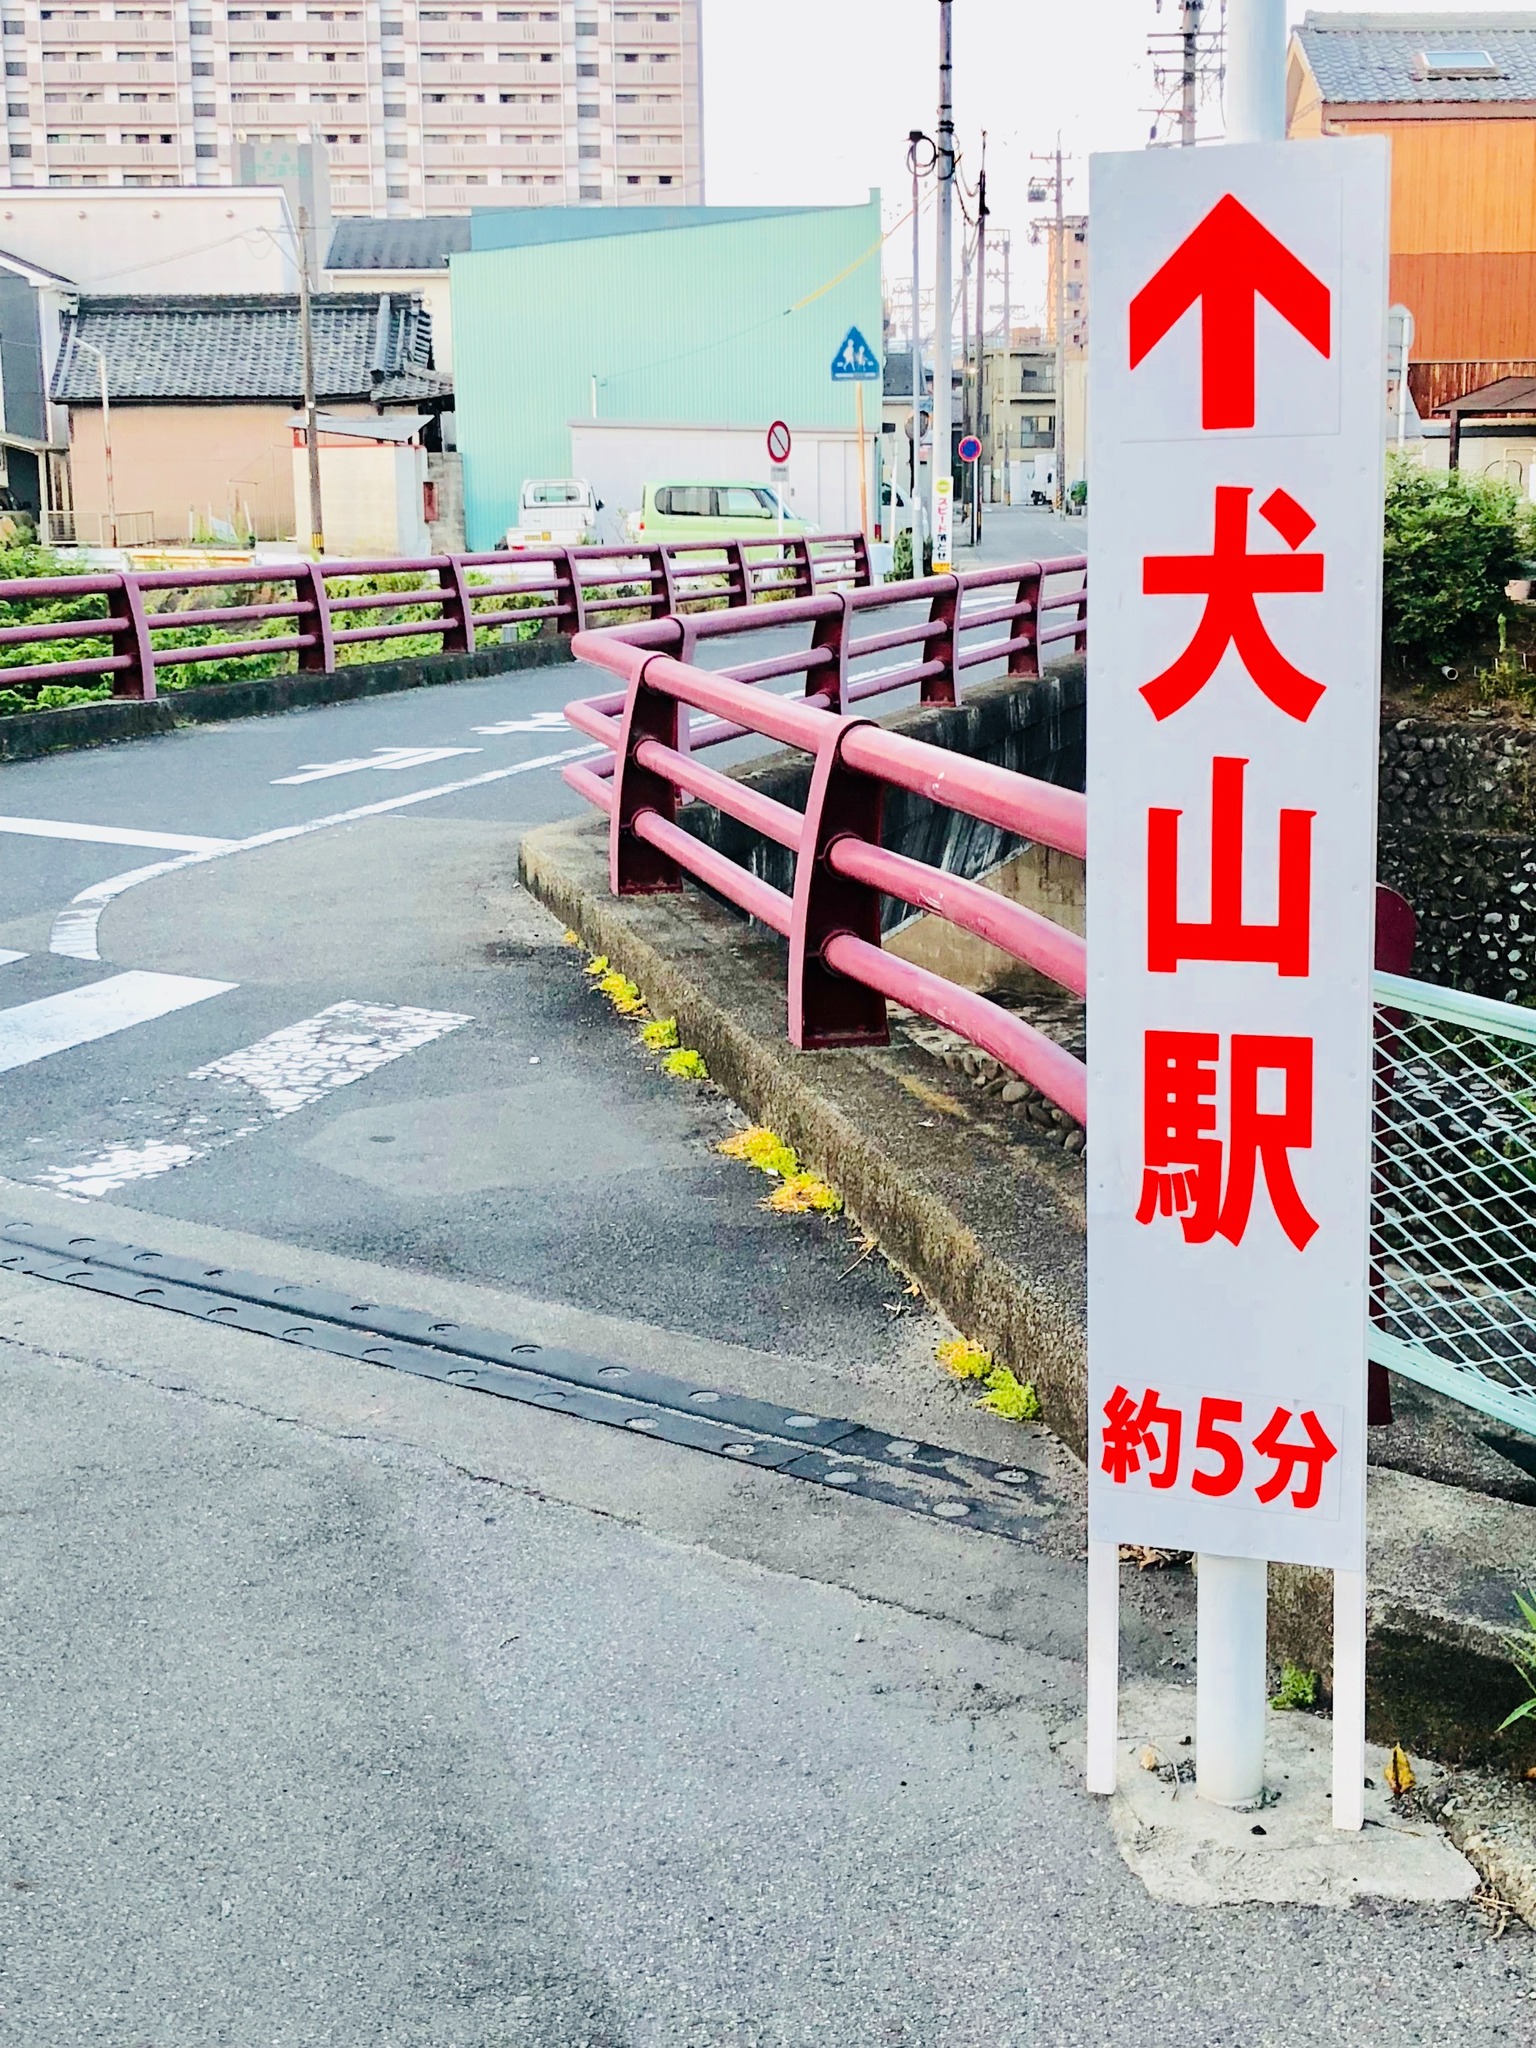 【一棟まるまる貸切】5人まで宿泊可能!犬山駅、犬山城、城下町まで徒歩5分